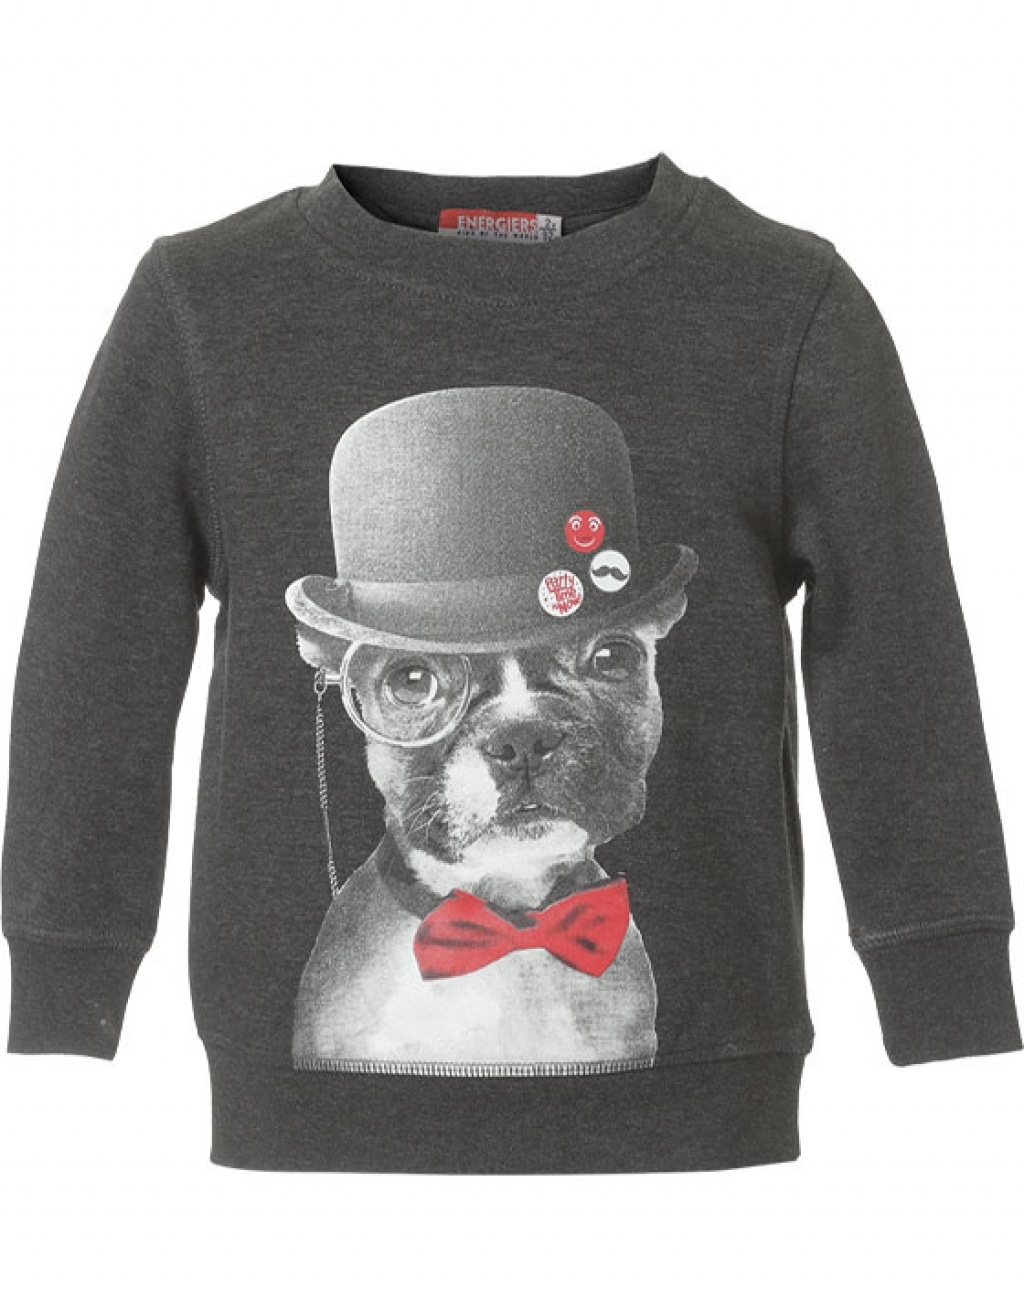 ΣΚ. ΓΚΡΙ Energiers Μπλούζα φούτερ με τύπωμα σκυλάκι με καπέλο - 12-117156-5  | Boogie